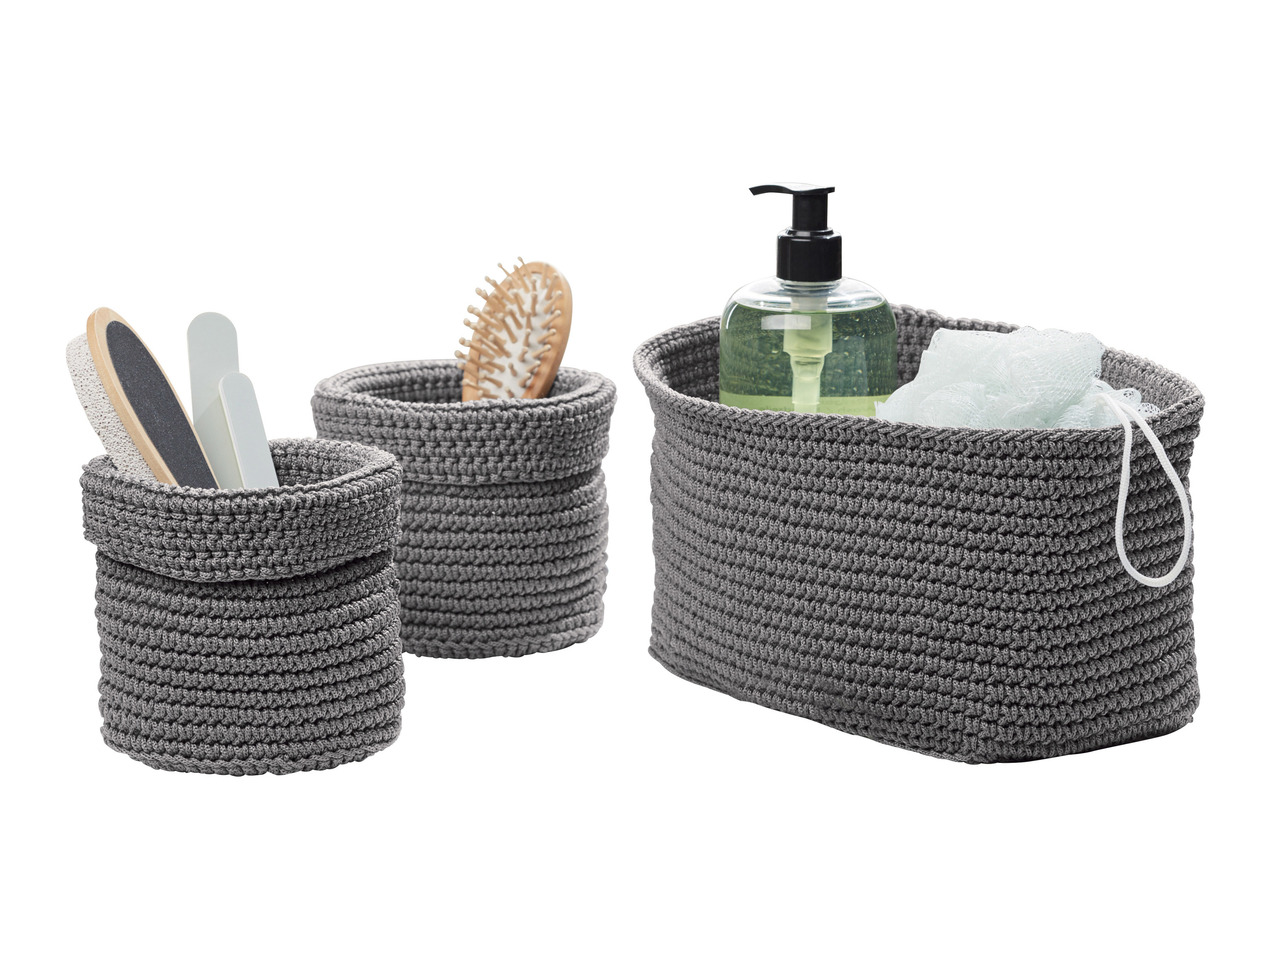 MIOMARE Crocheted Storage Baskets